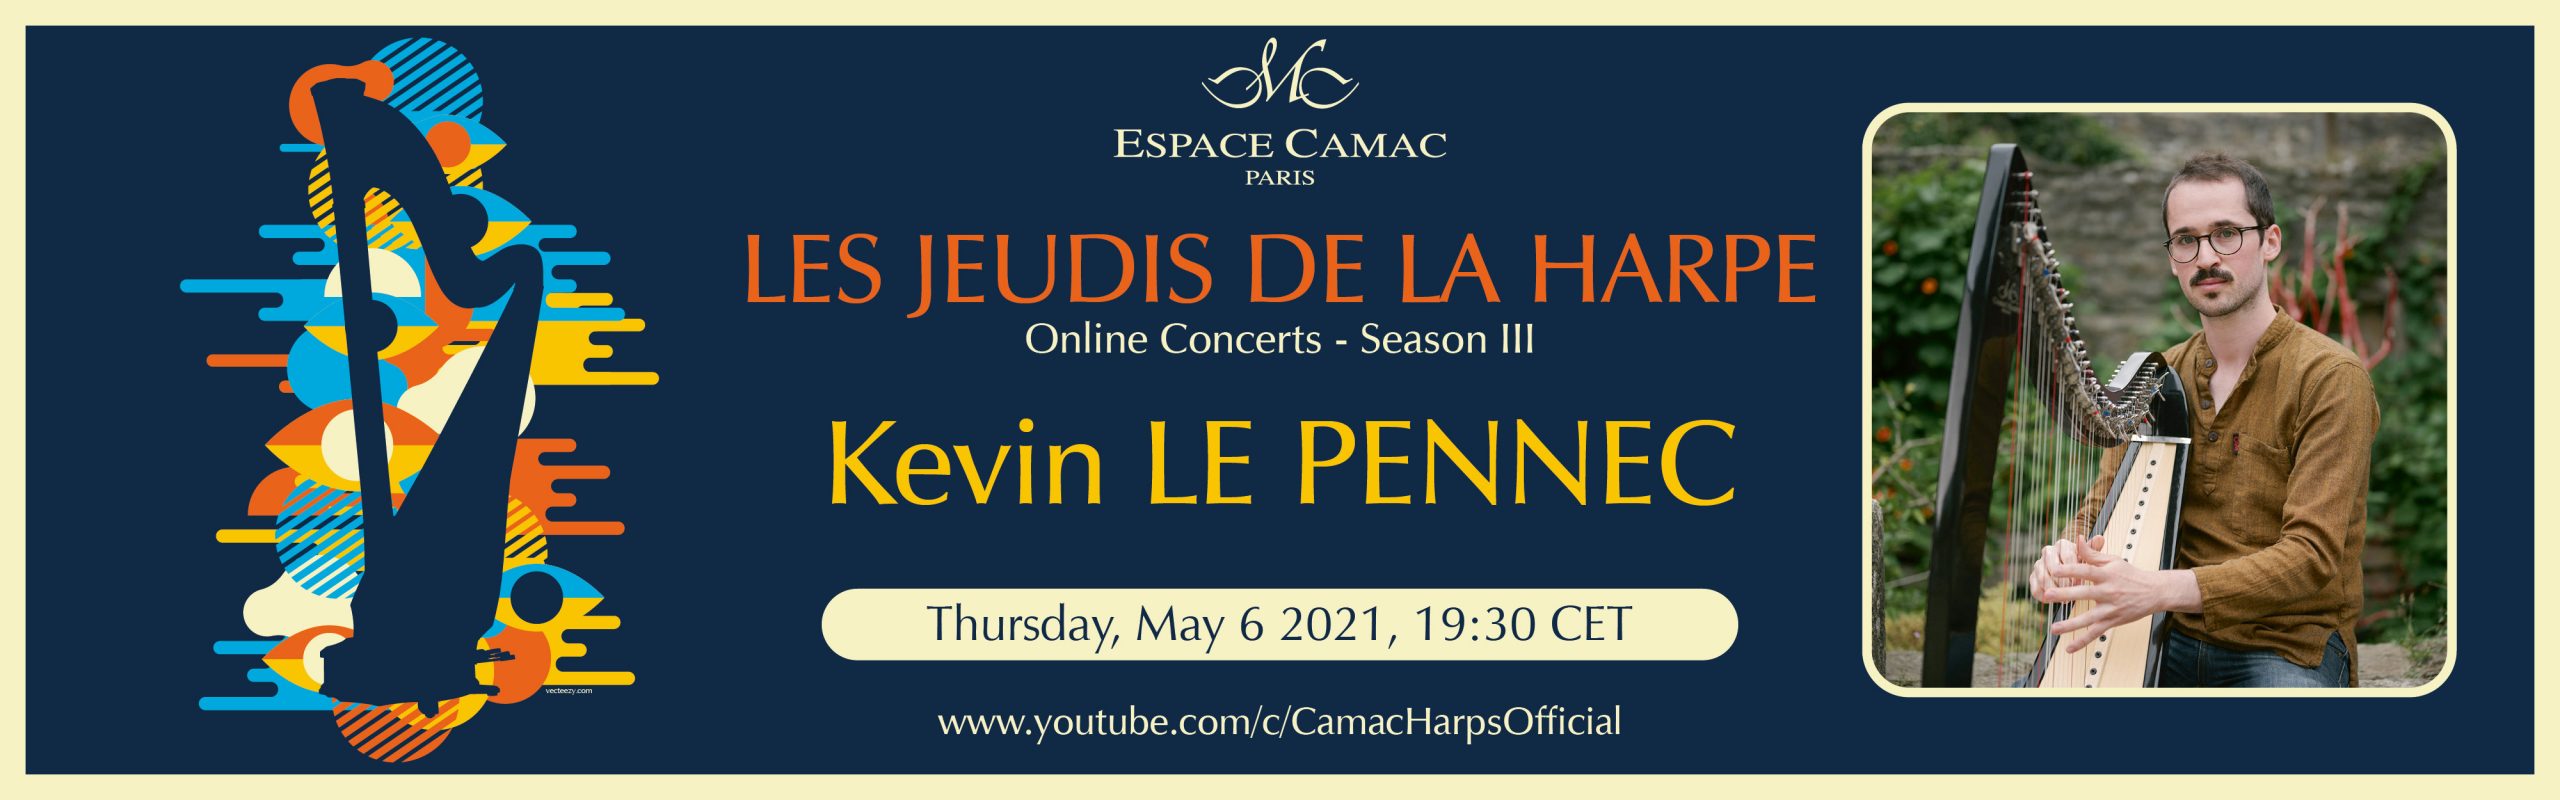 Les Jeudis de la Harpe: Kevin Le Pennec